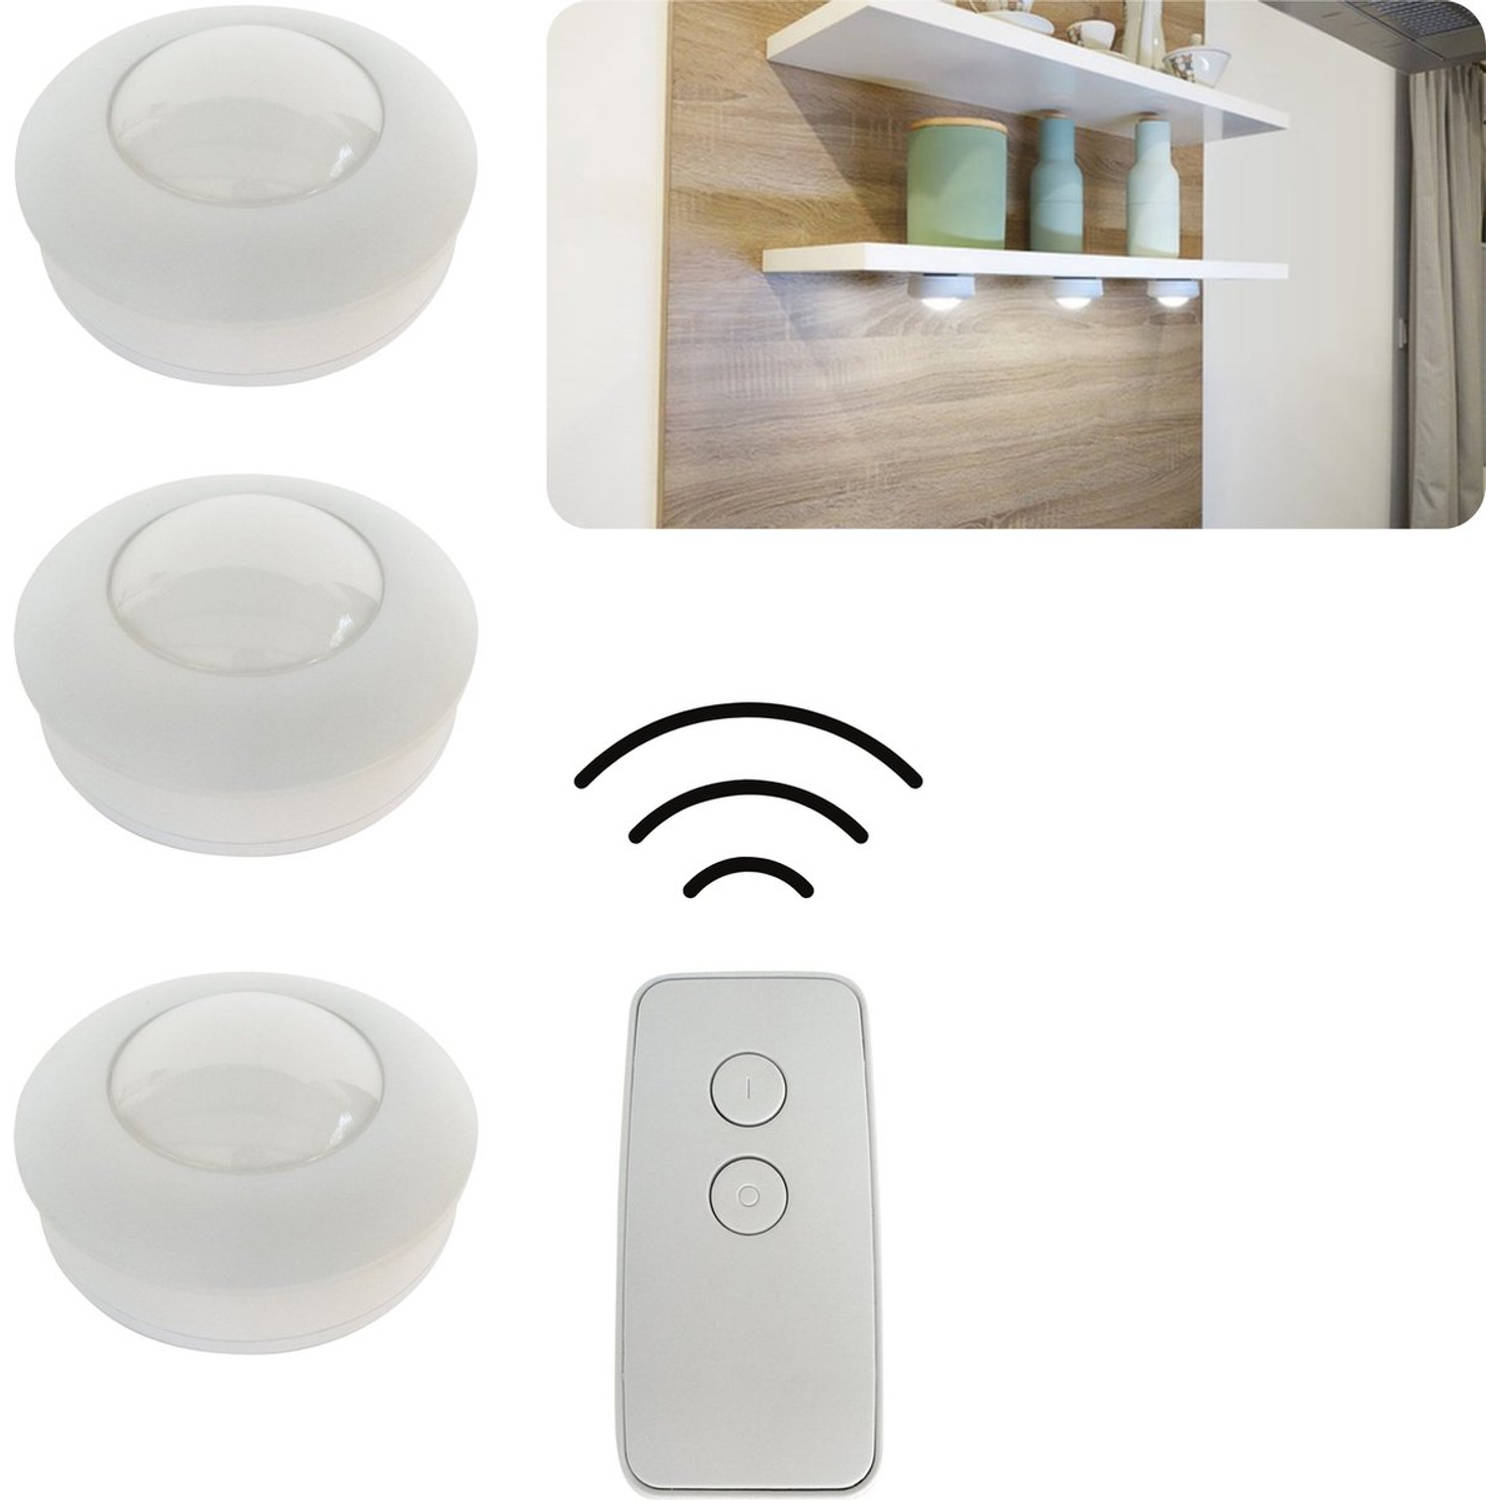 Induceren Zoekmachinemarketing Hiel Proventa Draadloze LED Keuken- en kastverlichting op batterijen met  afstandbediening - 3 x - Wit | Blokker